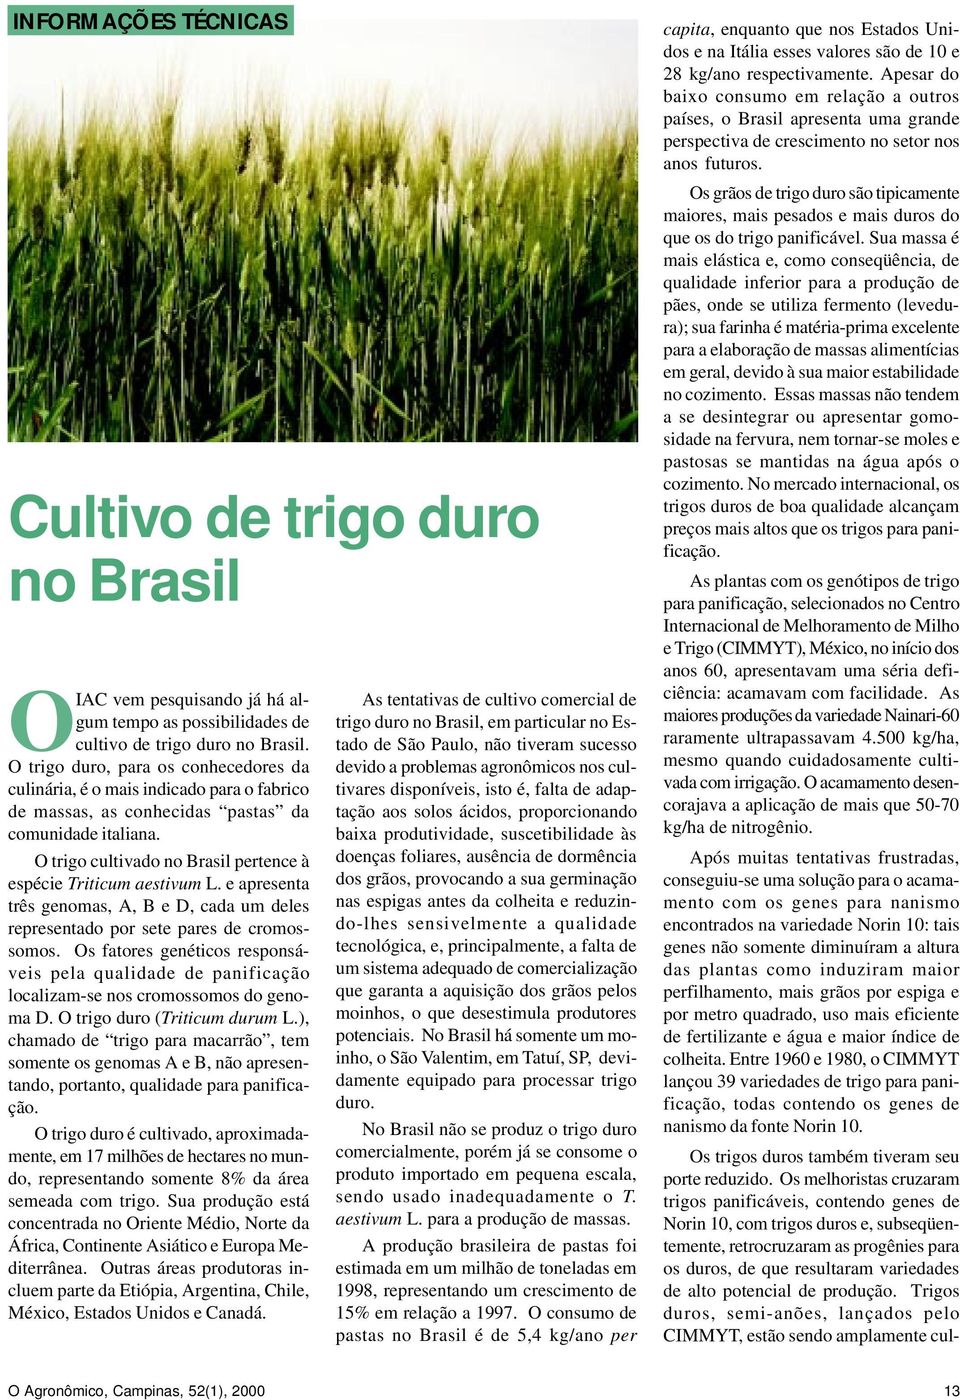 O trigo cultivado no Brasil pertence à espécie Triticum aestivum L. e apresenta três genomas, A, B e D, cada um deles representado por sete pares de cromossomos.